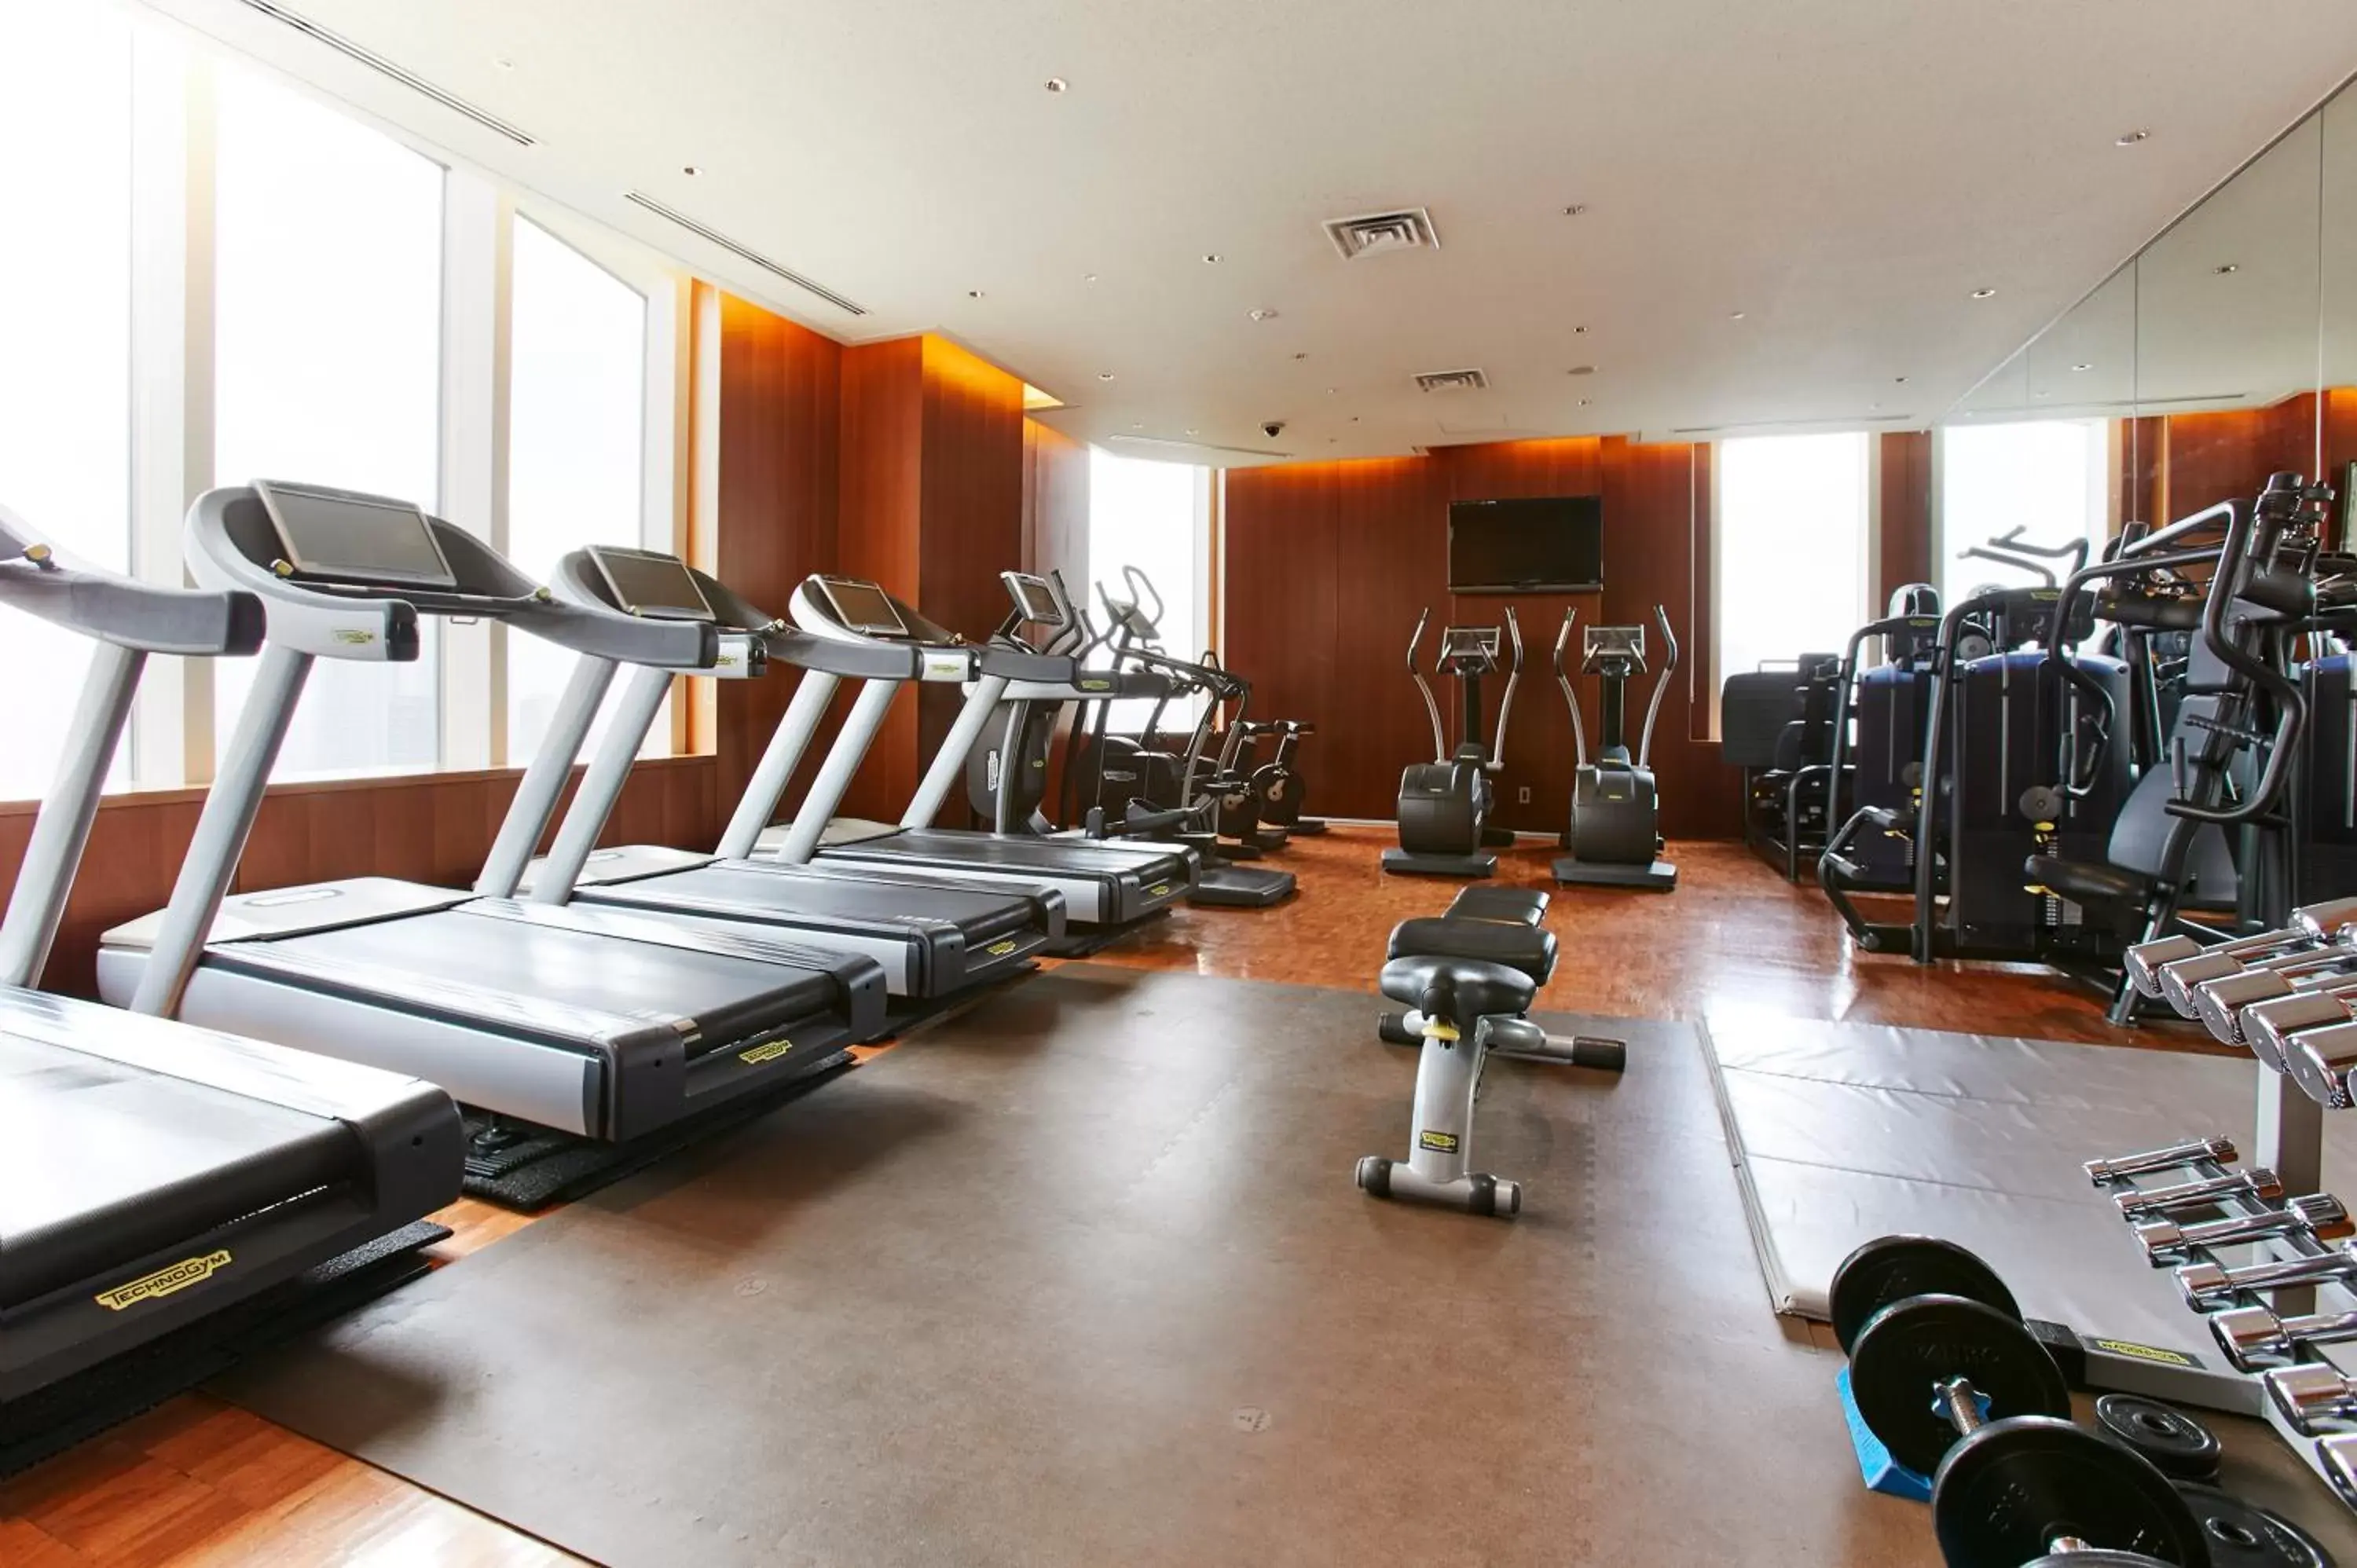 Fitness centre/facilities, Fitness Center/Facilities in Hyatt Regency Tokyo